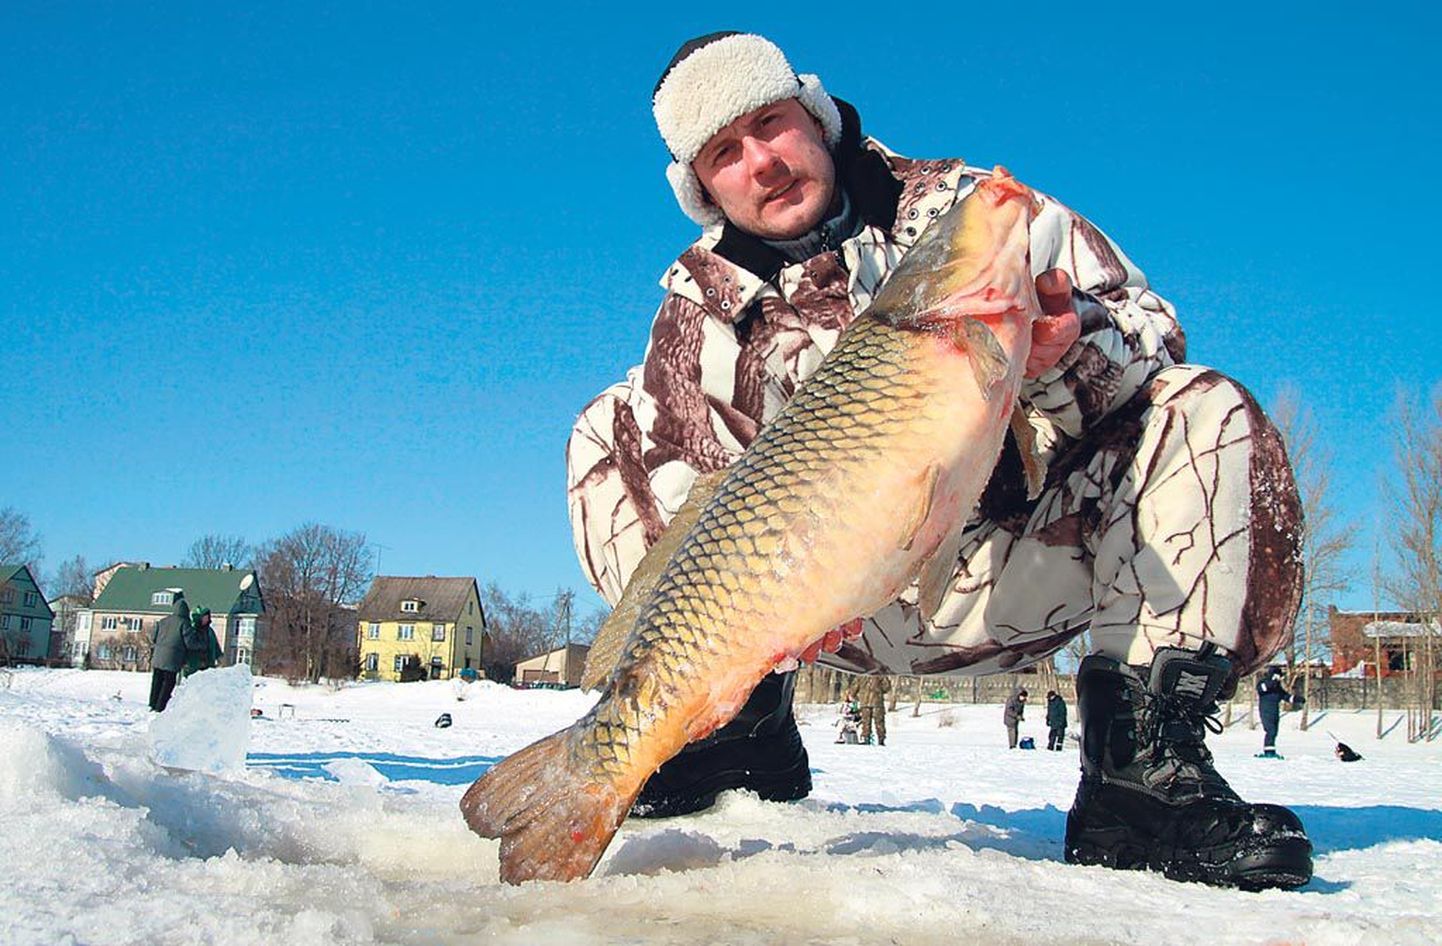 “Õngega sain nii suure kala esimest korda,” tunnistas 35aastane Sergei Tarassov.